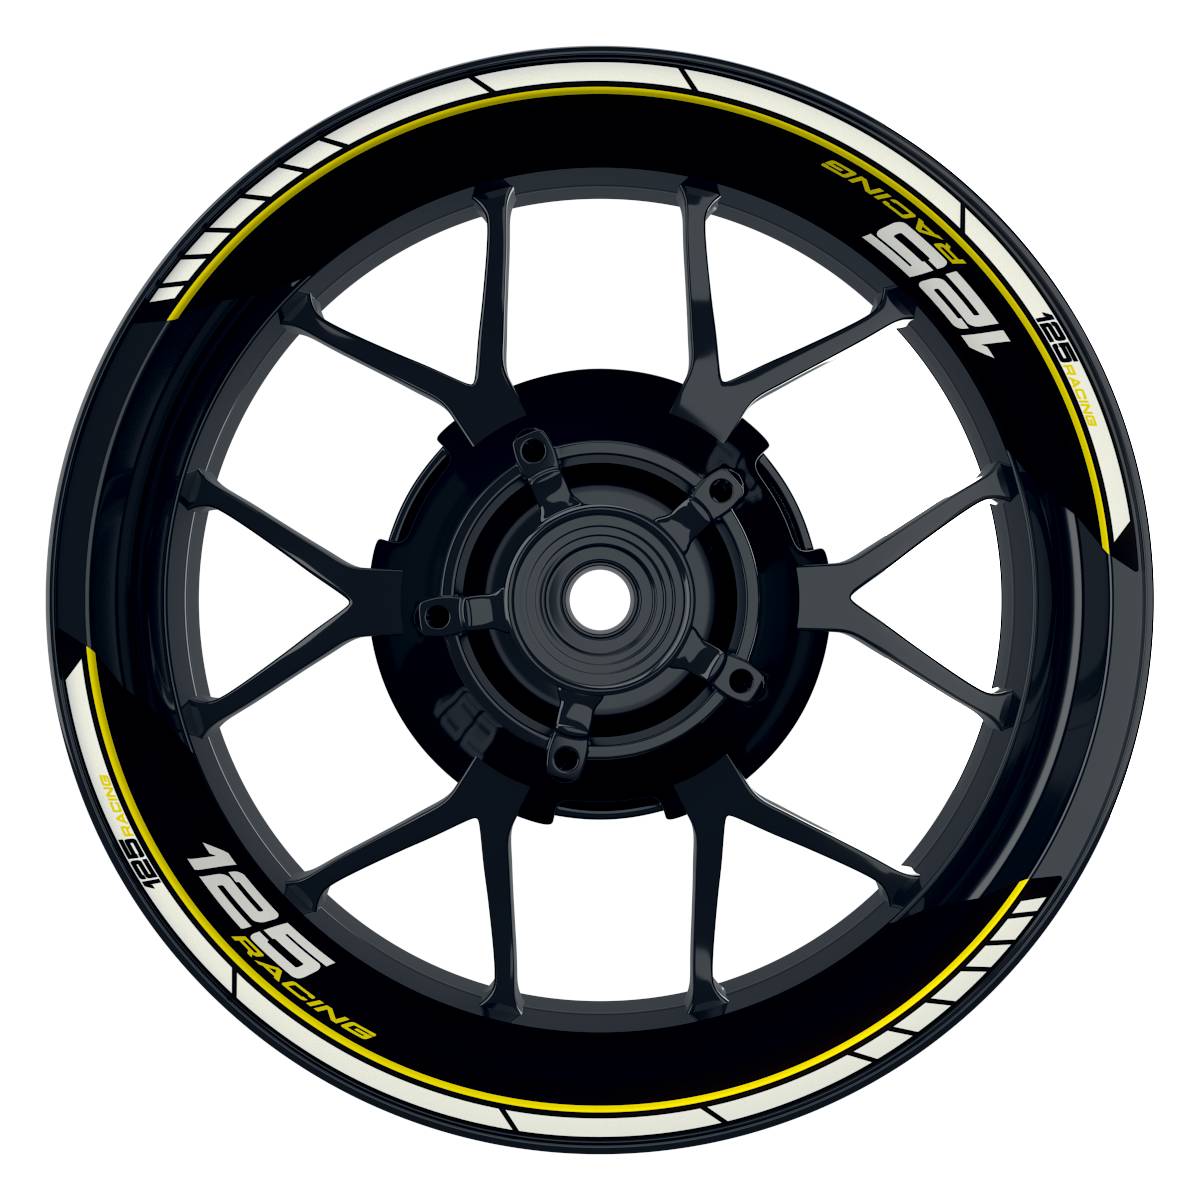 KTM Racing 125 Clean schwarz gelb Frontansicht